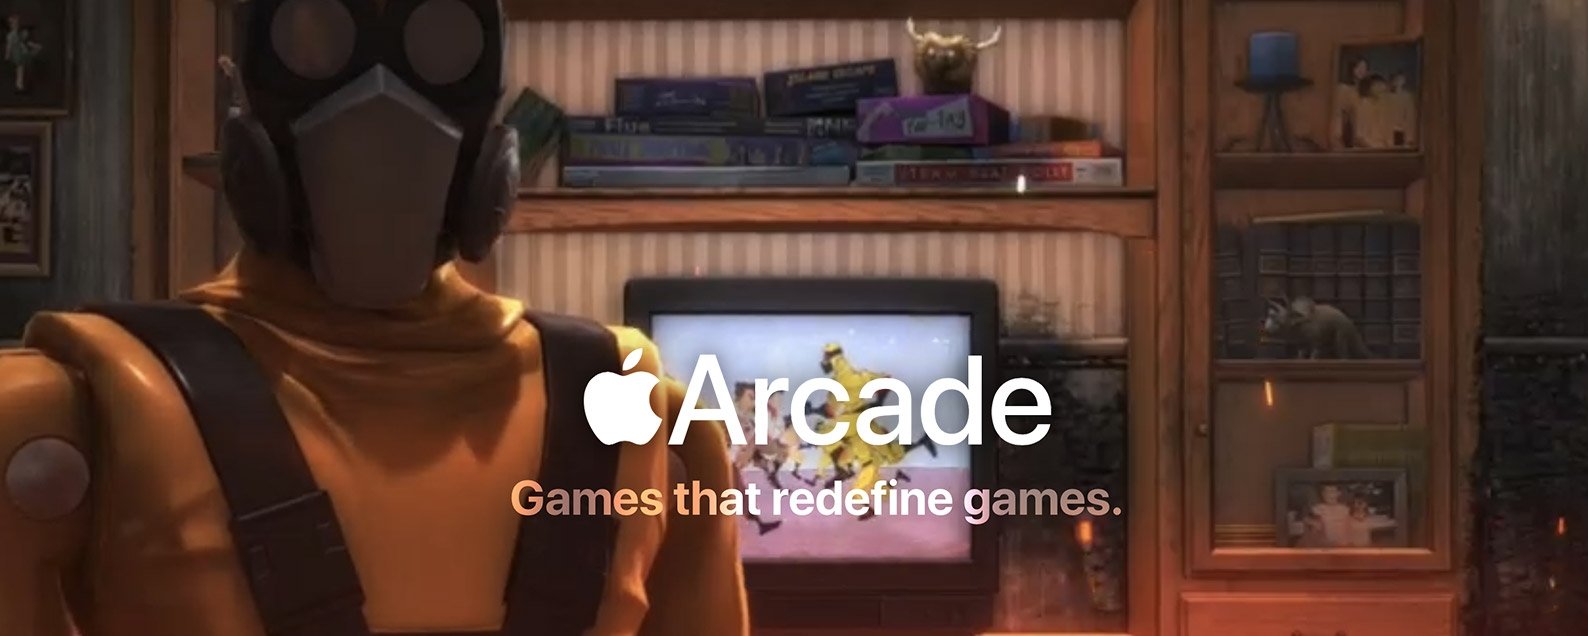 Los desarrolladores de juegos están entusiasmados con Apple Arcade